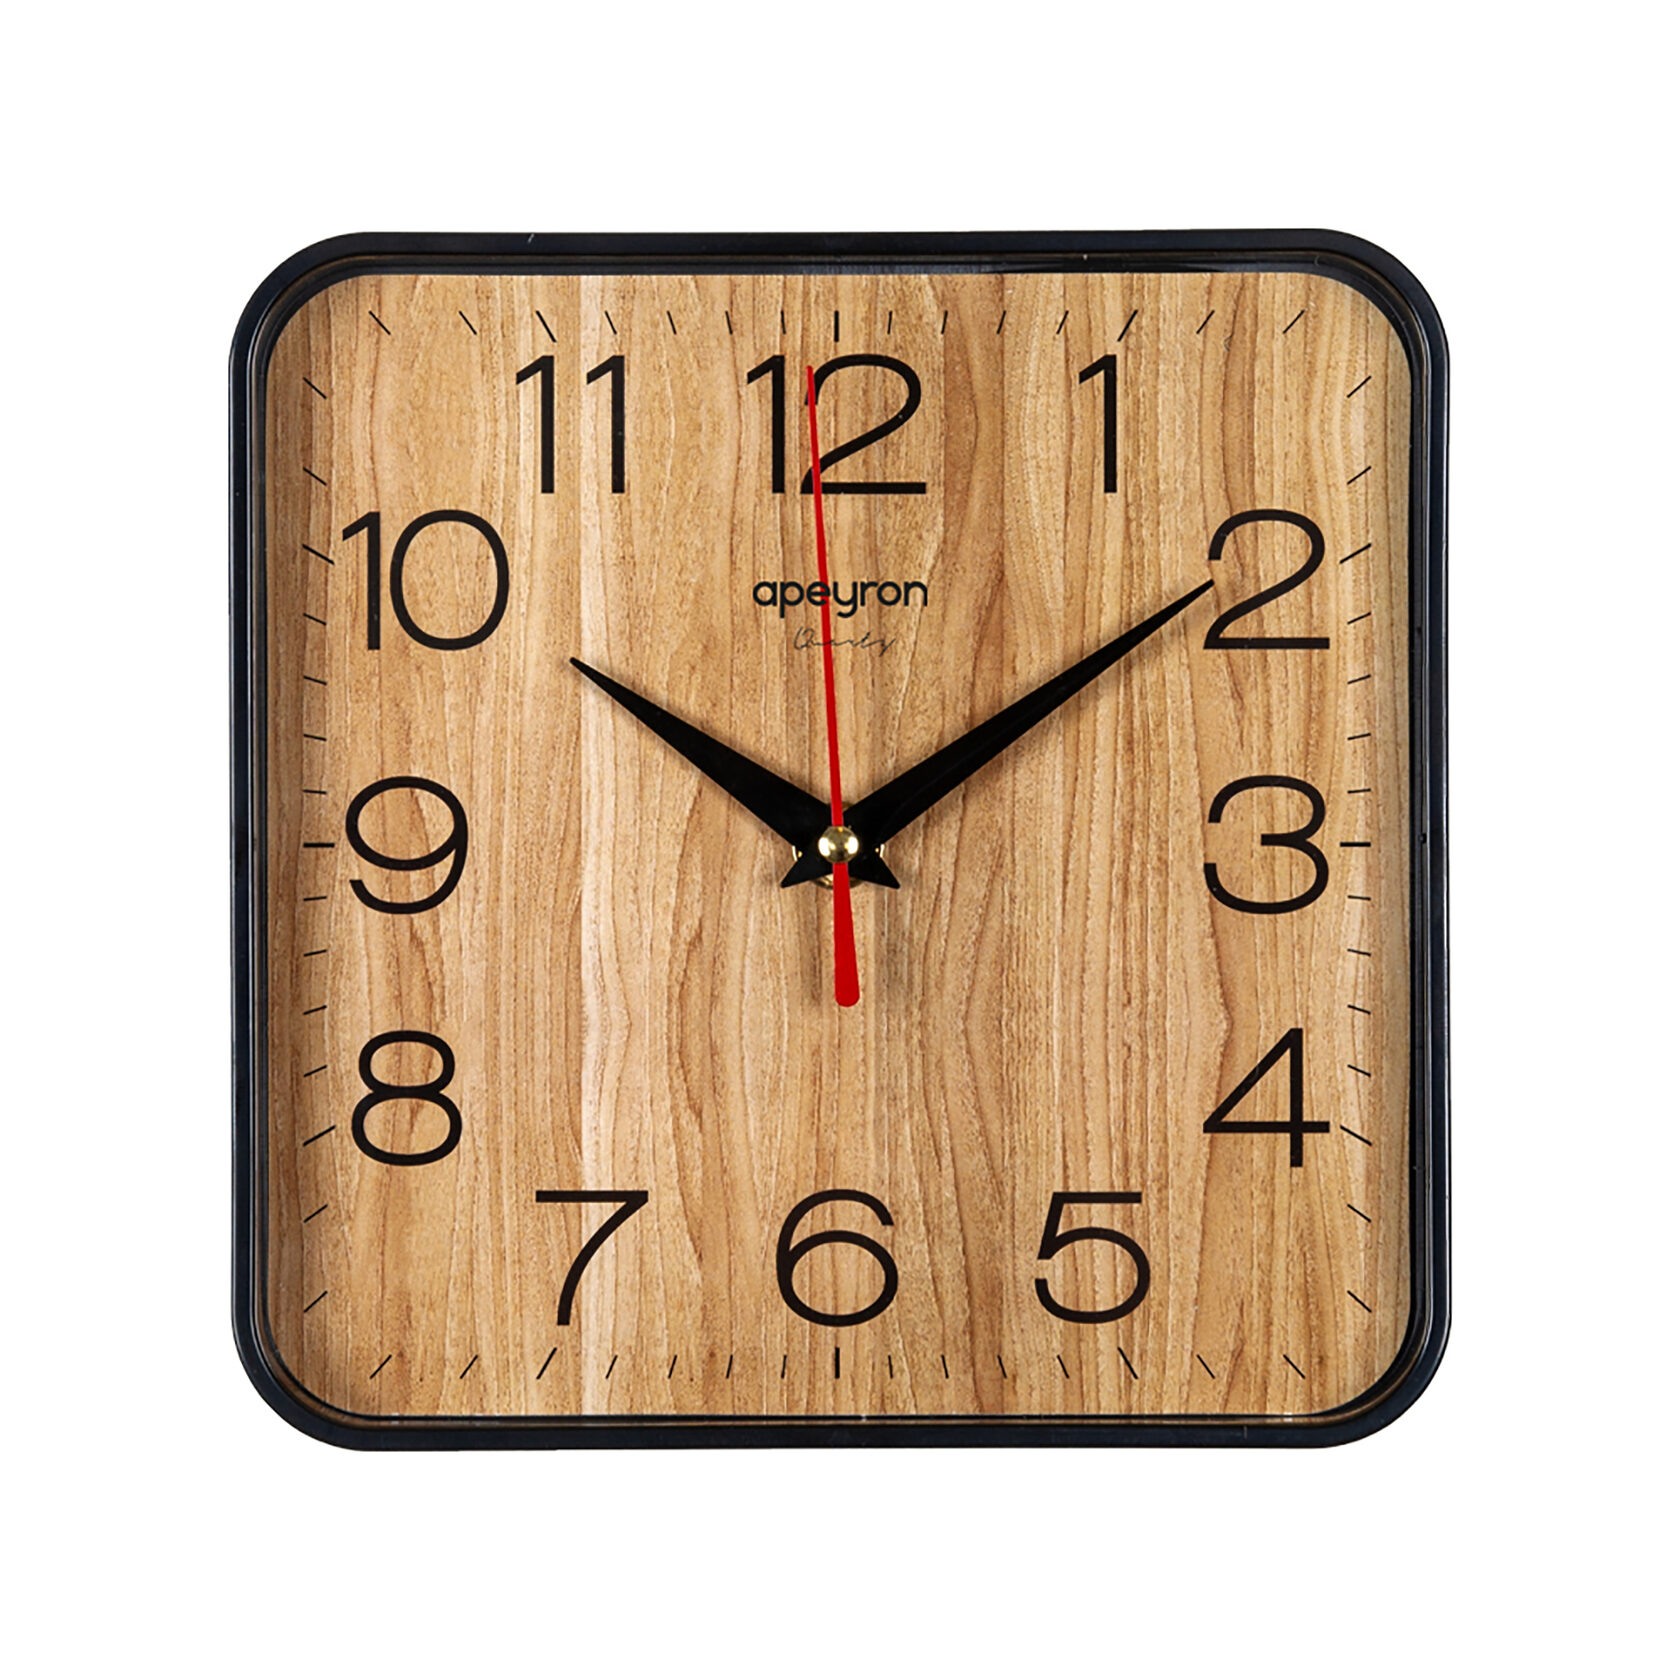 Циферблаты часов прямоугольные. Часы Бюрократ WALLC. Часы настенные Бюрократ WALLC-r02p. Настенные часы Рубин х 19 см. Часы Рубин 1918.